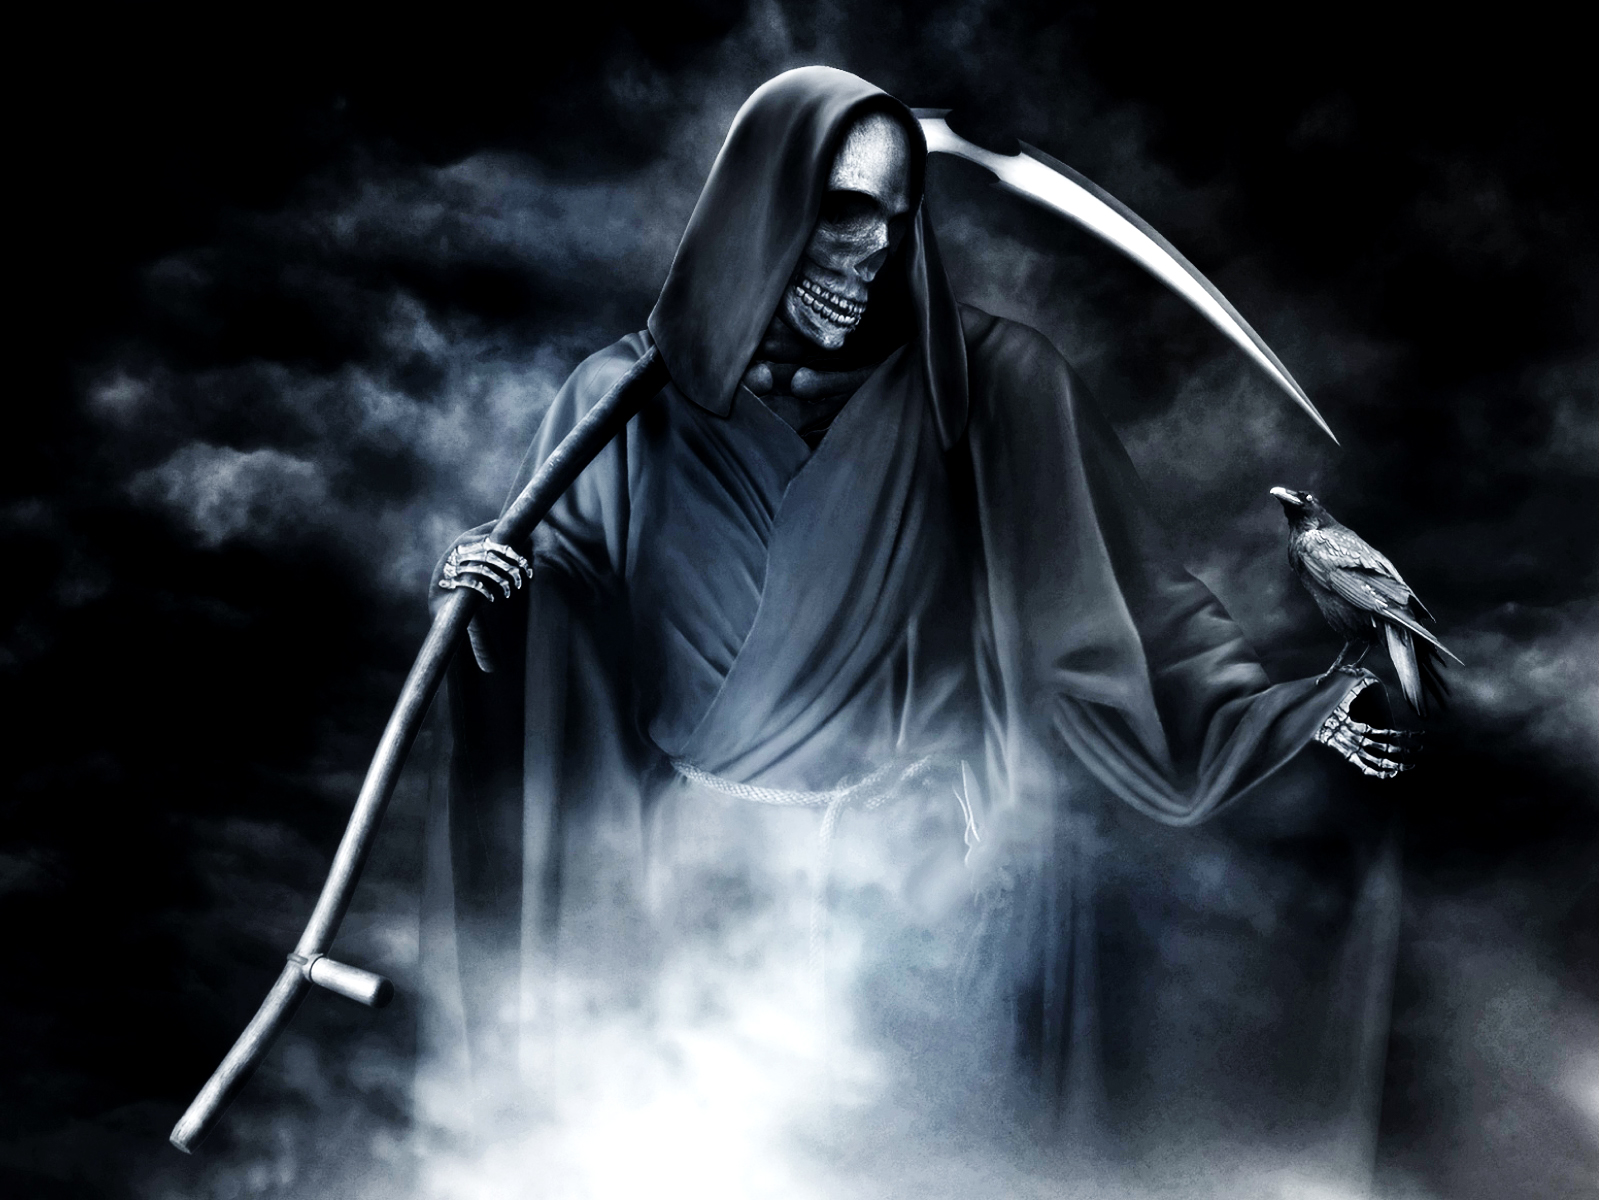 reaper overwatch fanart 4k iPhone 11 Wallpapers Free Download